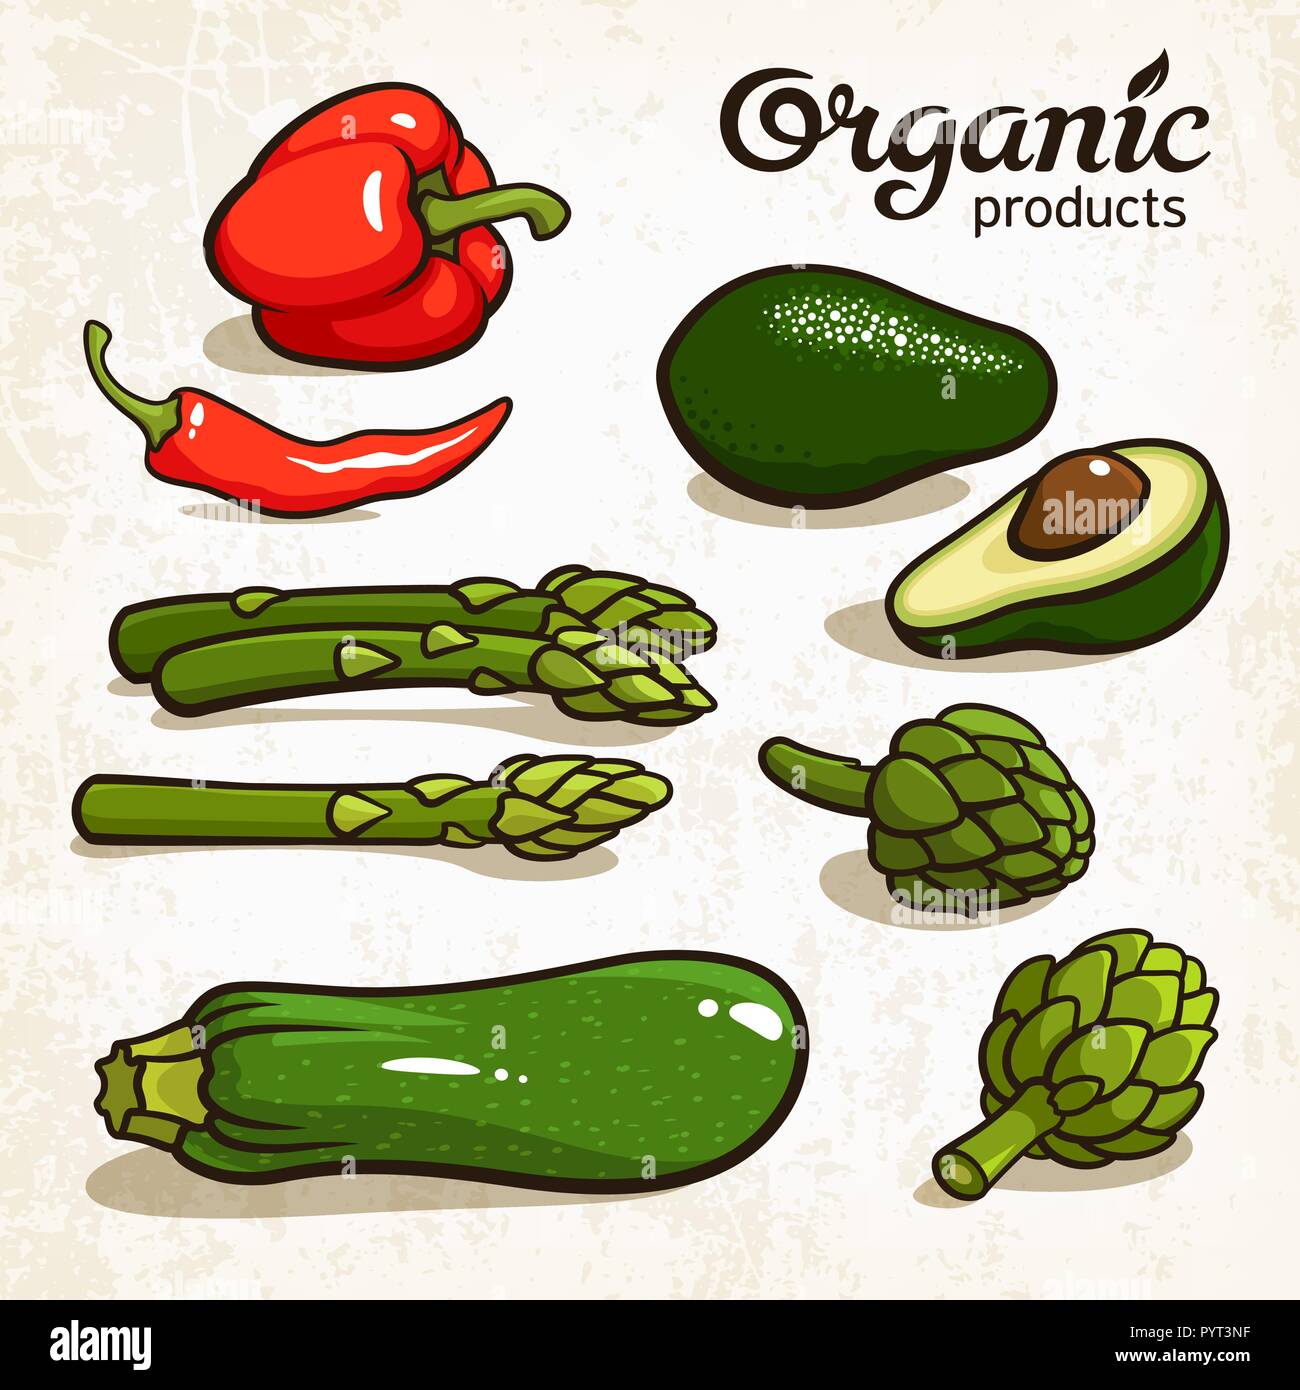 Illustration Vecteur de légumes : avocat, le piment, le poivre, l'asperge, l'artichaut, courgette Illustration de Vecteur